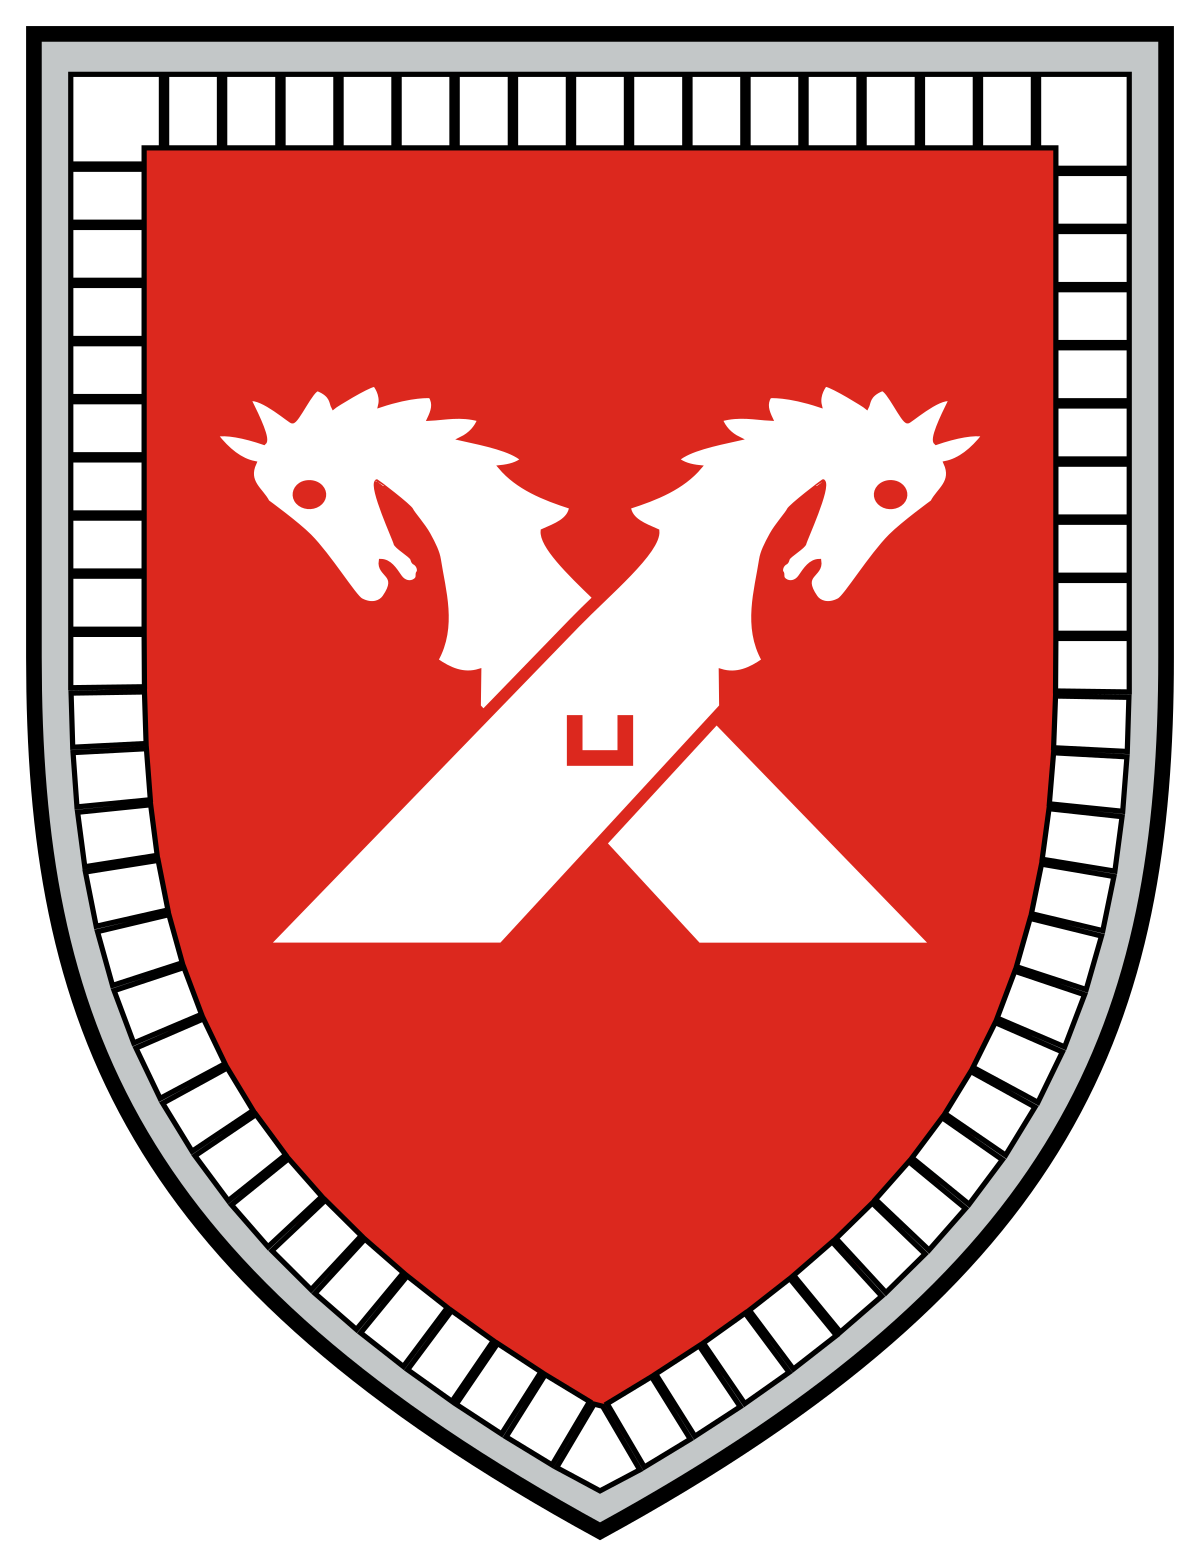 第3装甲師団 ドイツ連邦陸軍 Wikipedia